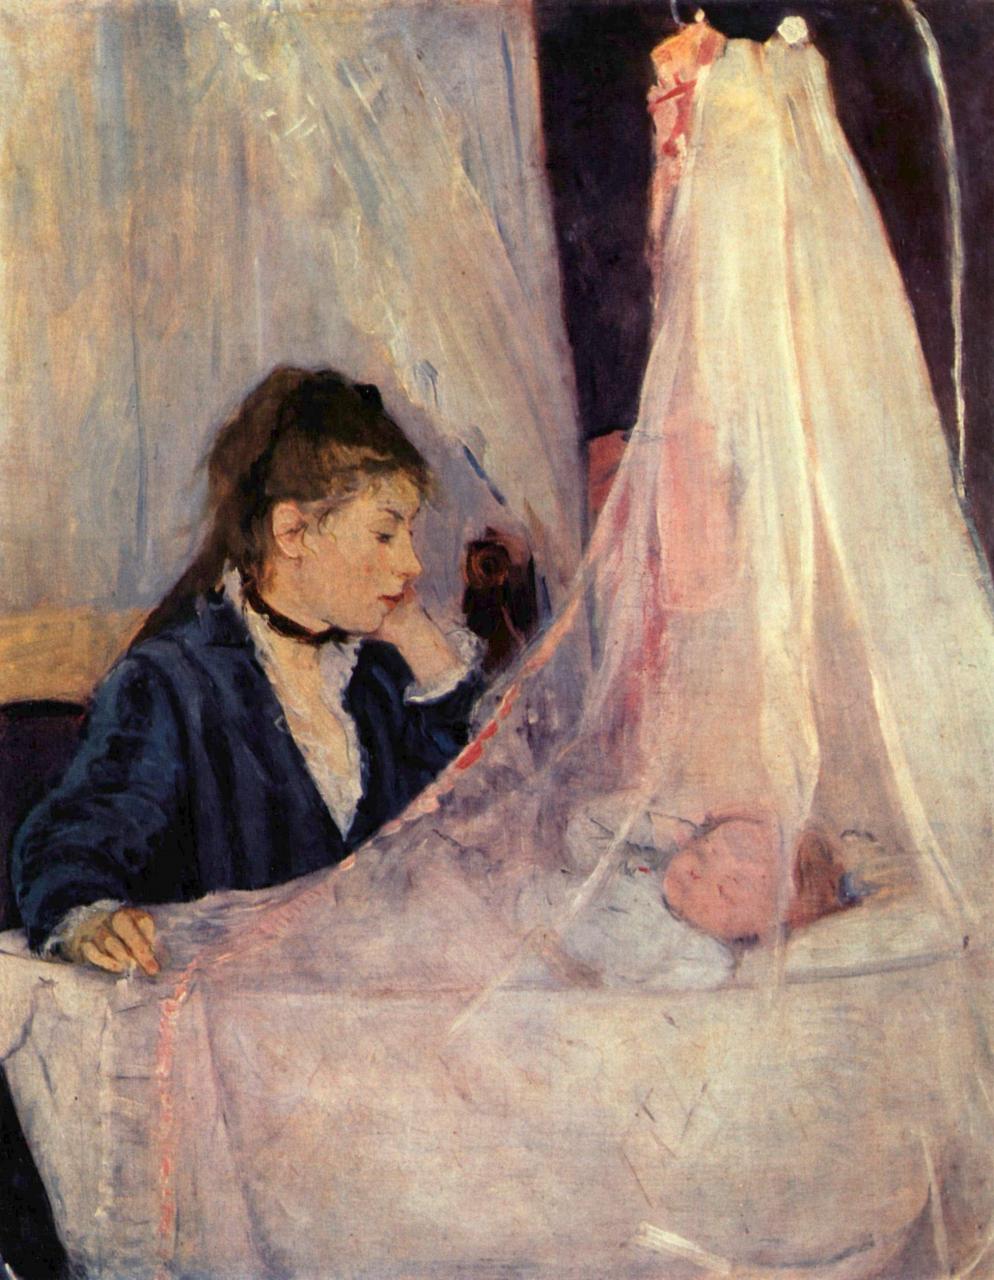 Berthe_Morisot_Le-berceau-1873.jpg